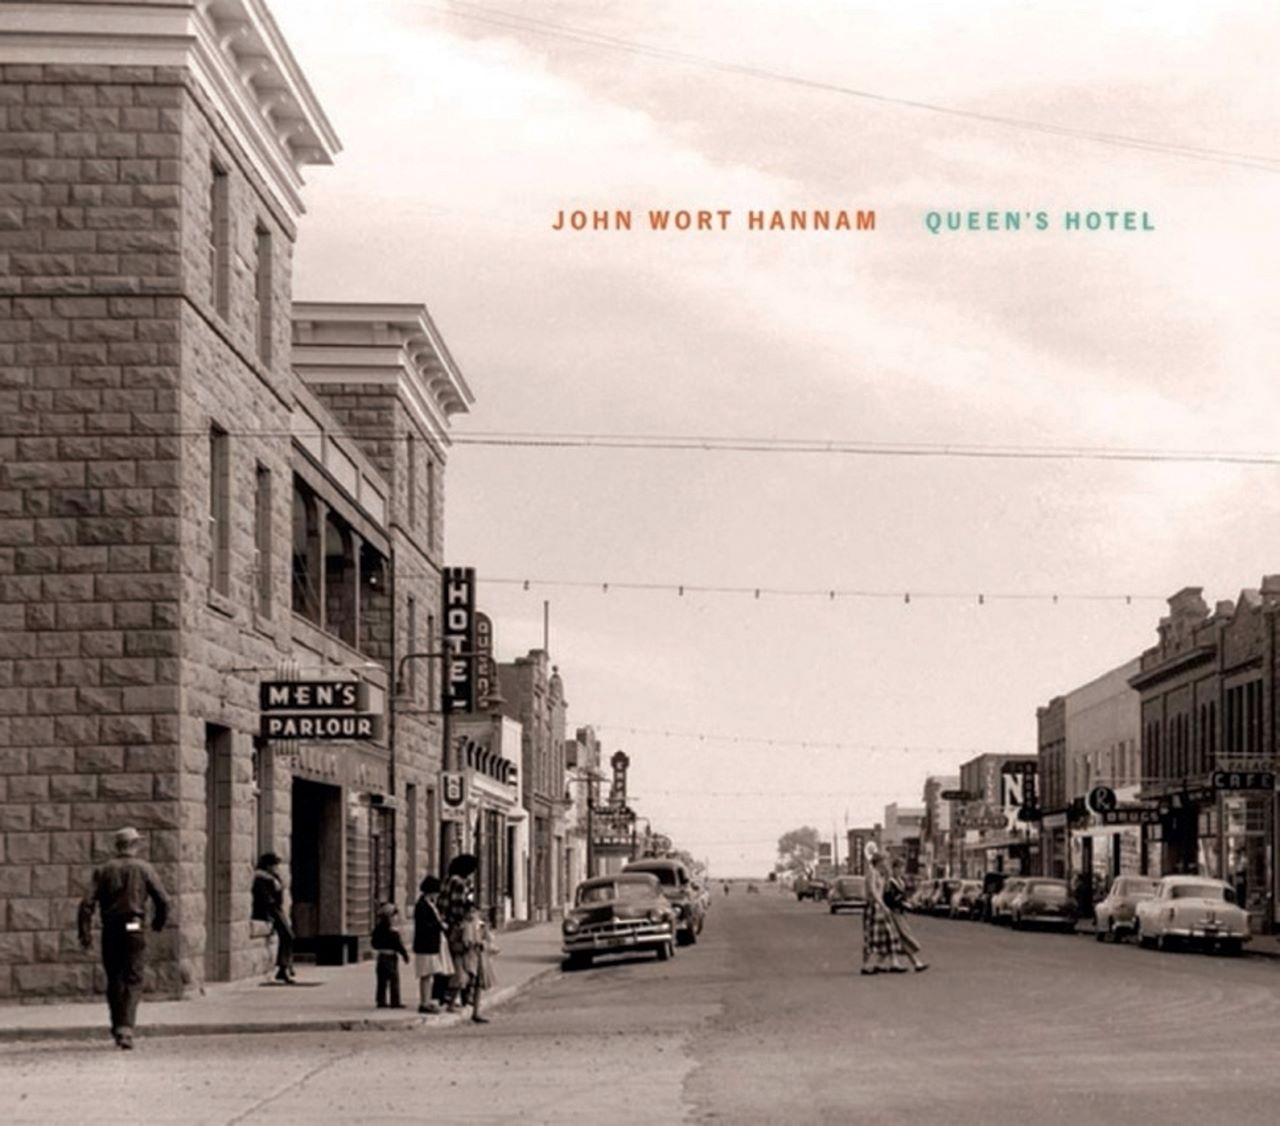 John Wort Hannam - Queen’s Hotel cover album